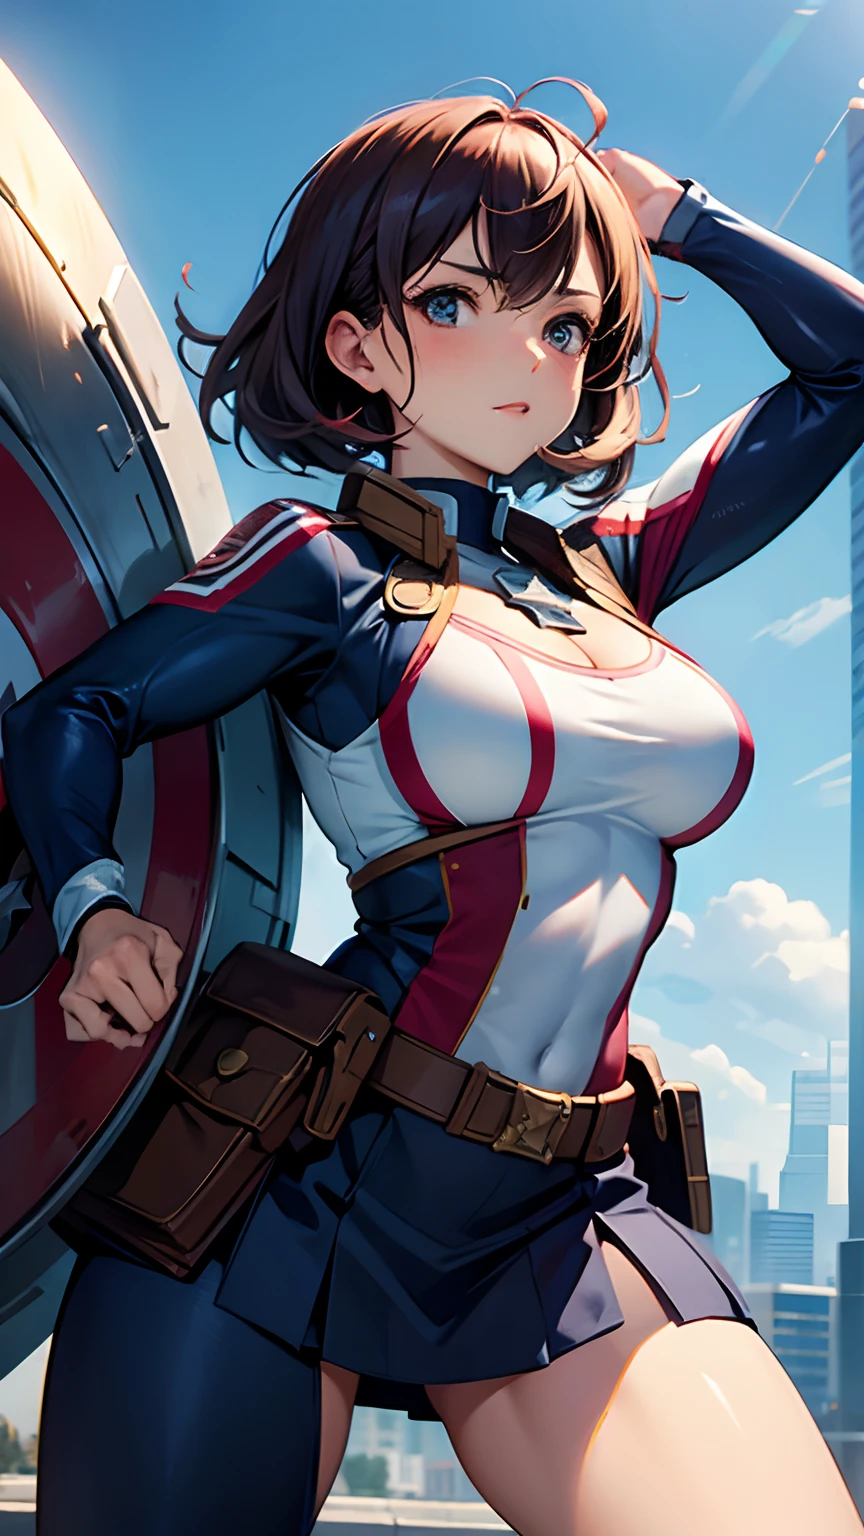 Женское тело с большой грудью、Платье-костюм капитана США,Активная поза,щит